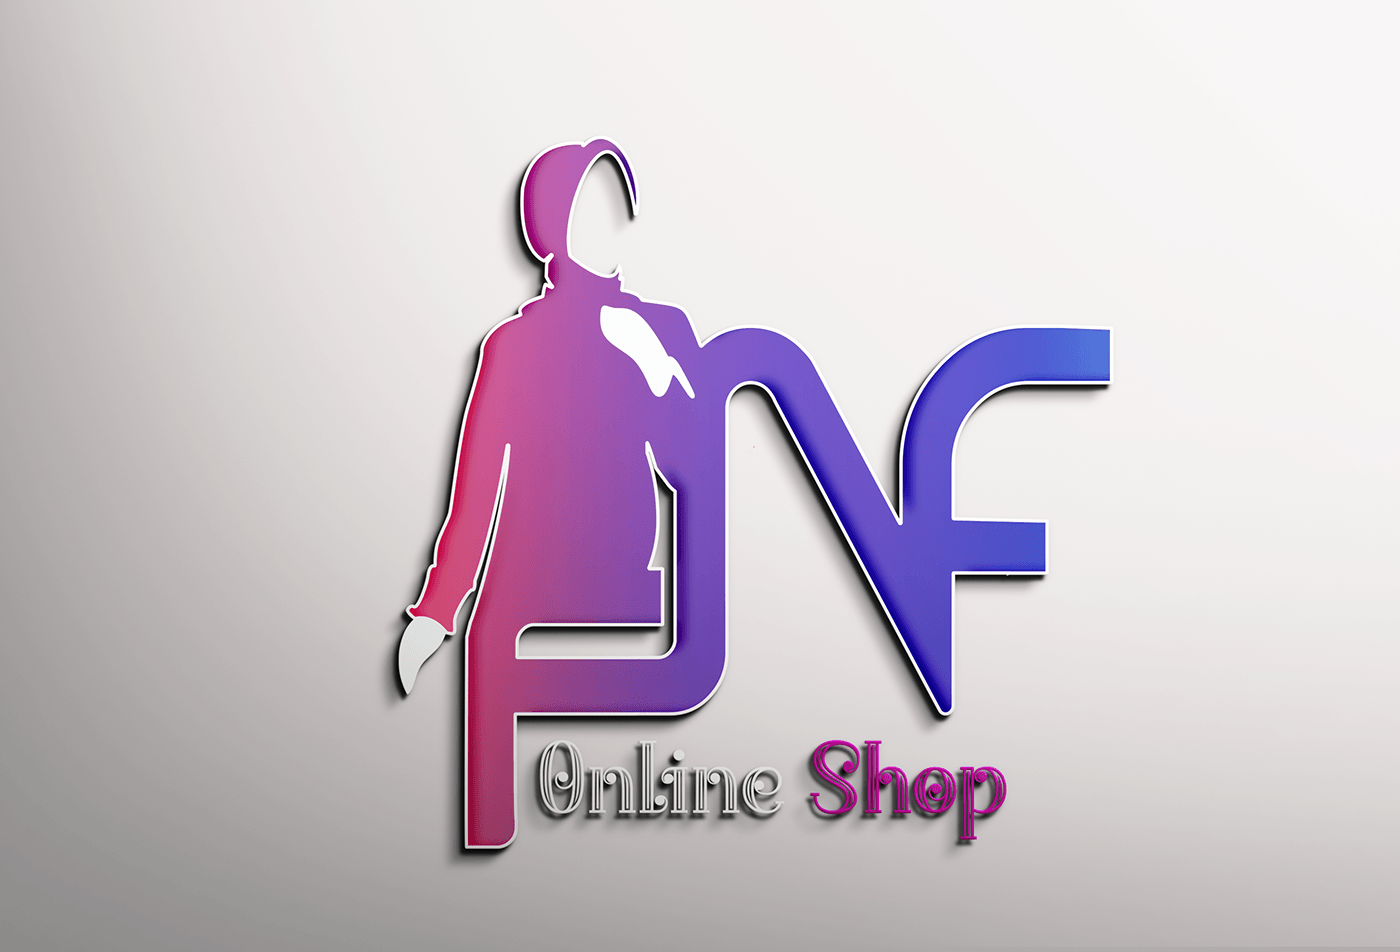 fnf online shop logo design